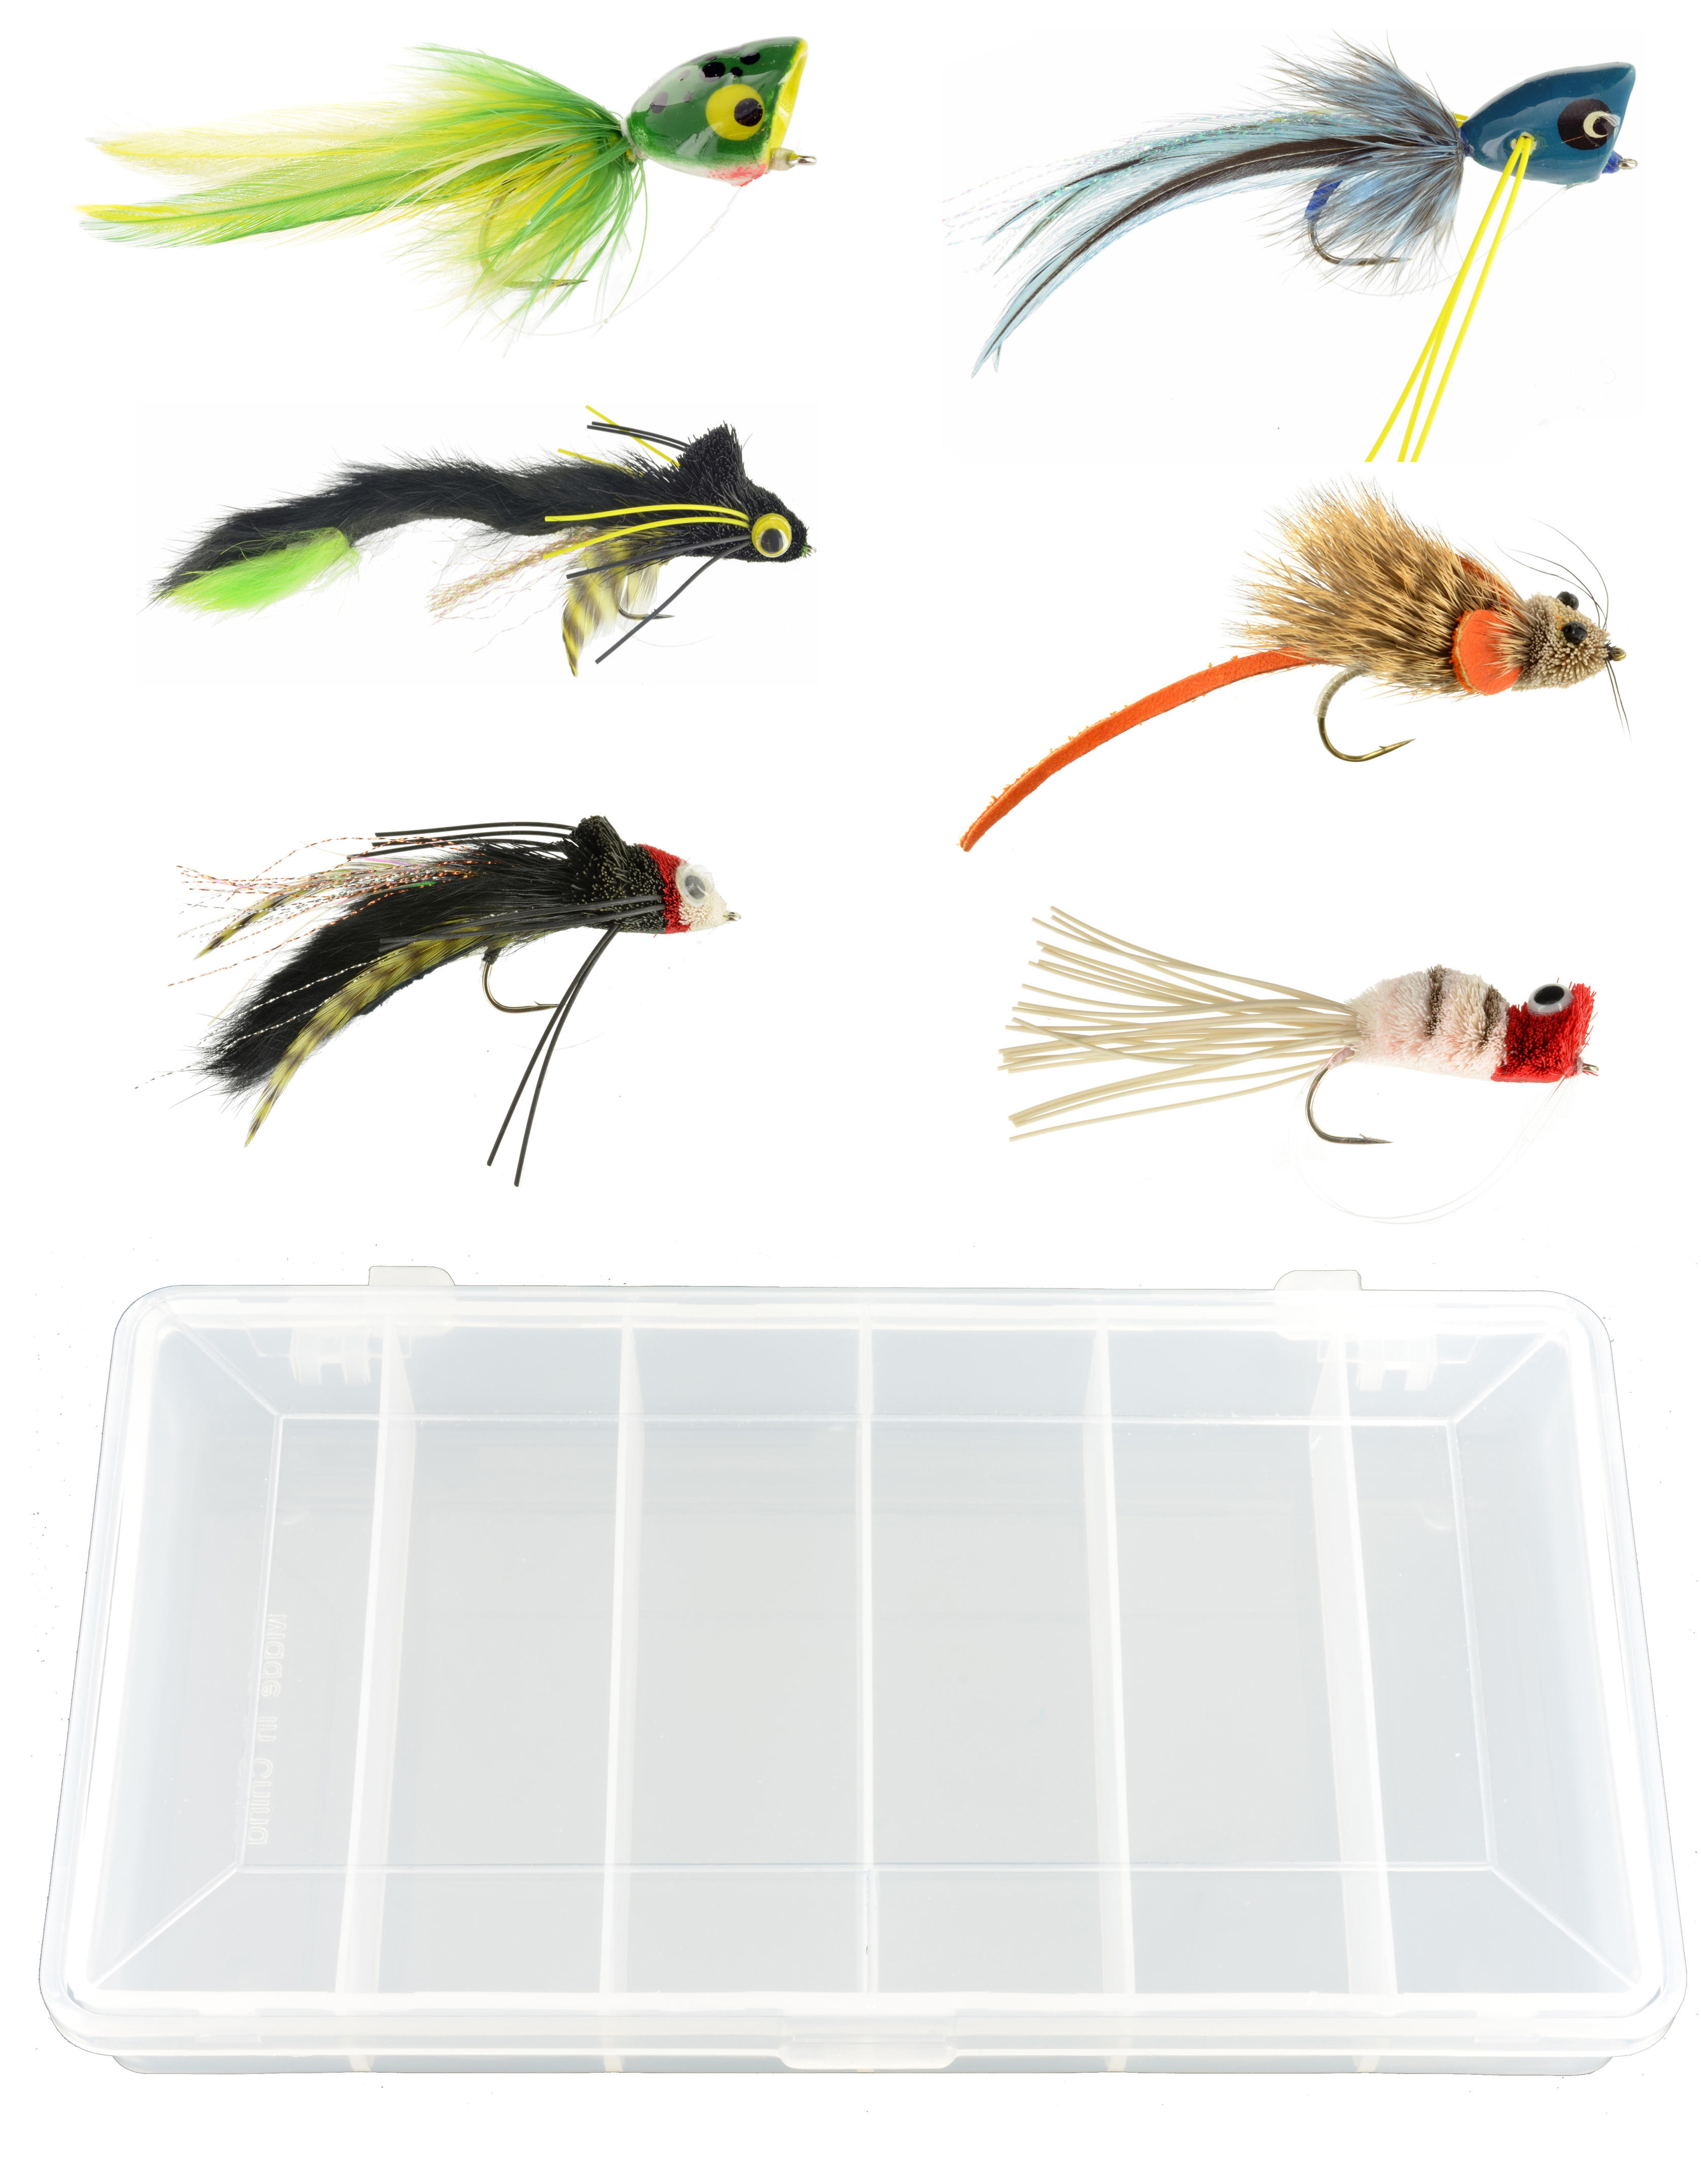 Top Water Bass & Pike Assortment - 6 Flies + Fly Box